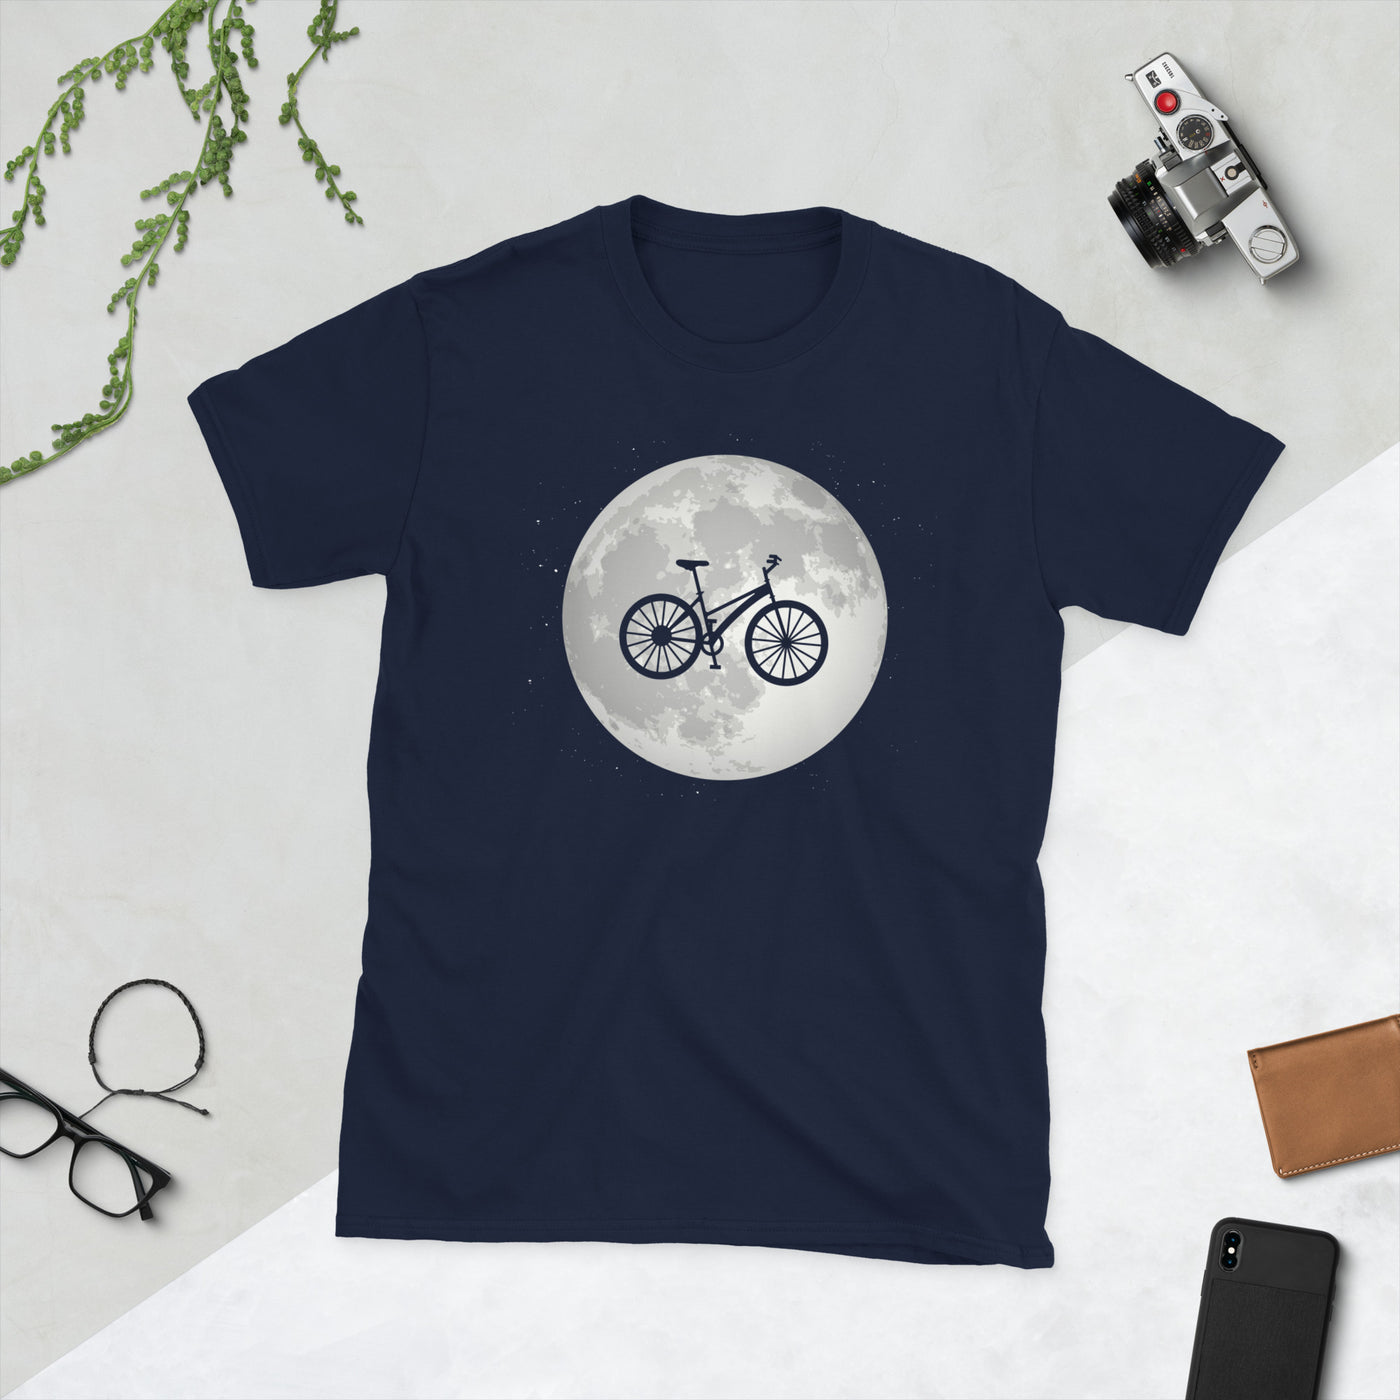 Vollmond - Radfahren - T-Shirt (Unisex) fahrrad Navy